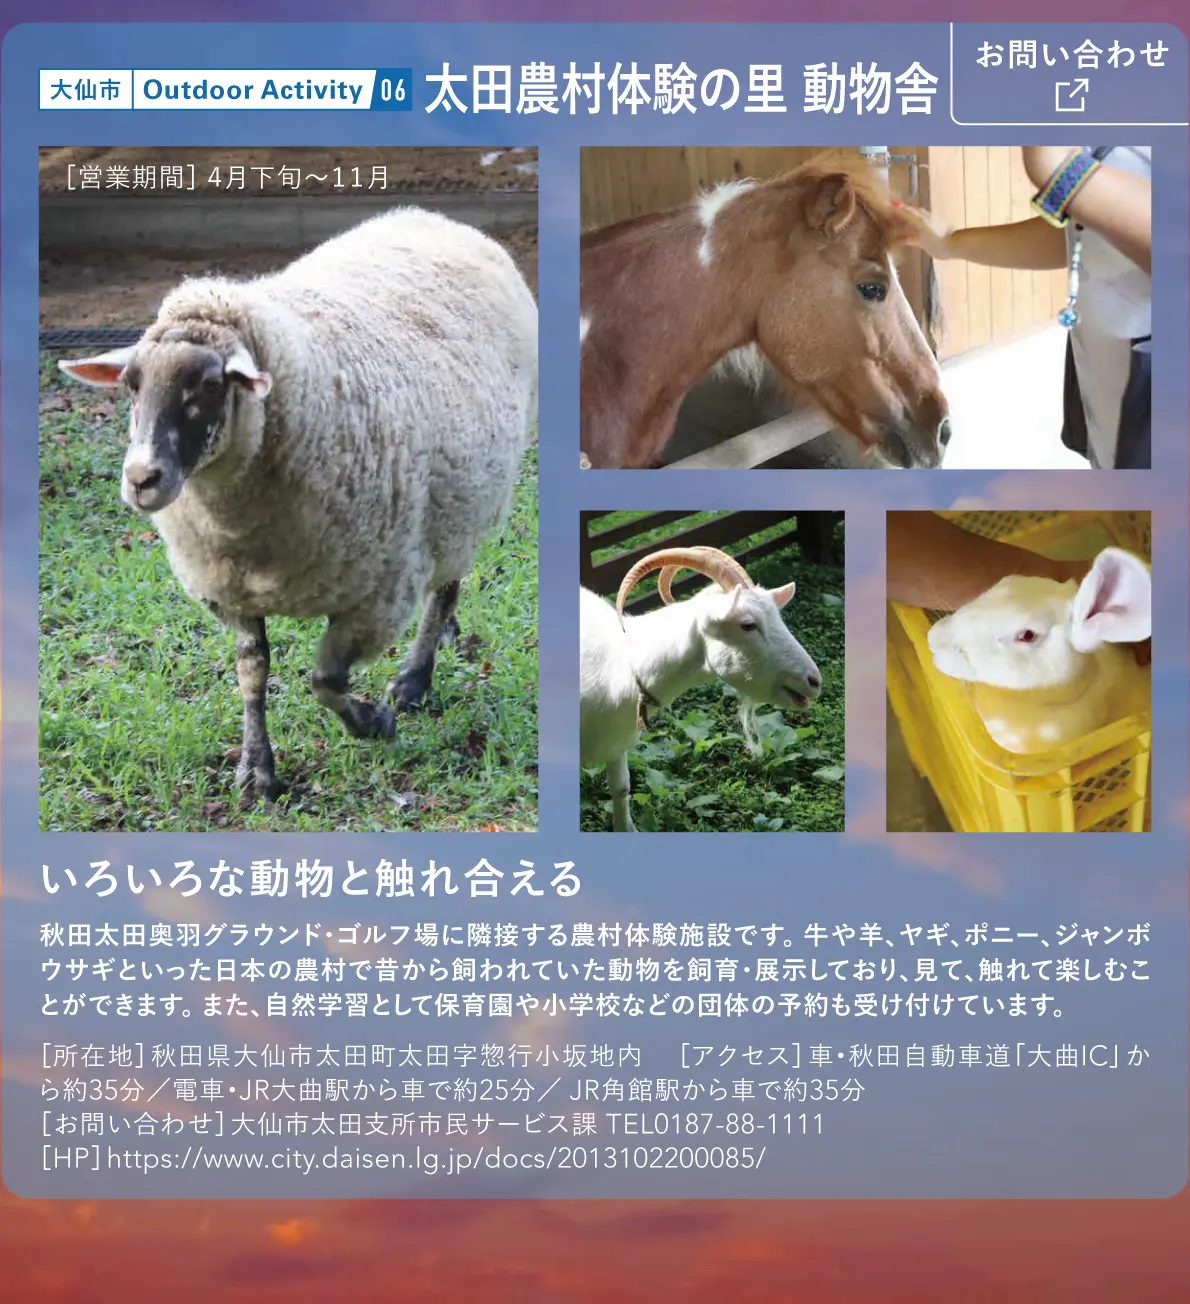 太田農村体験の里 動物舎